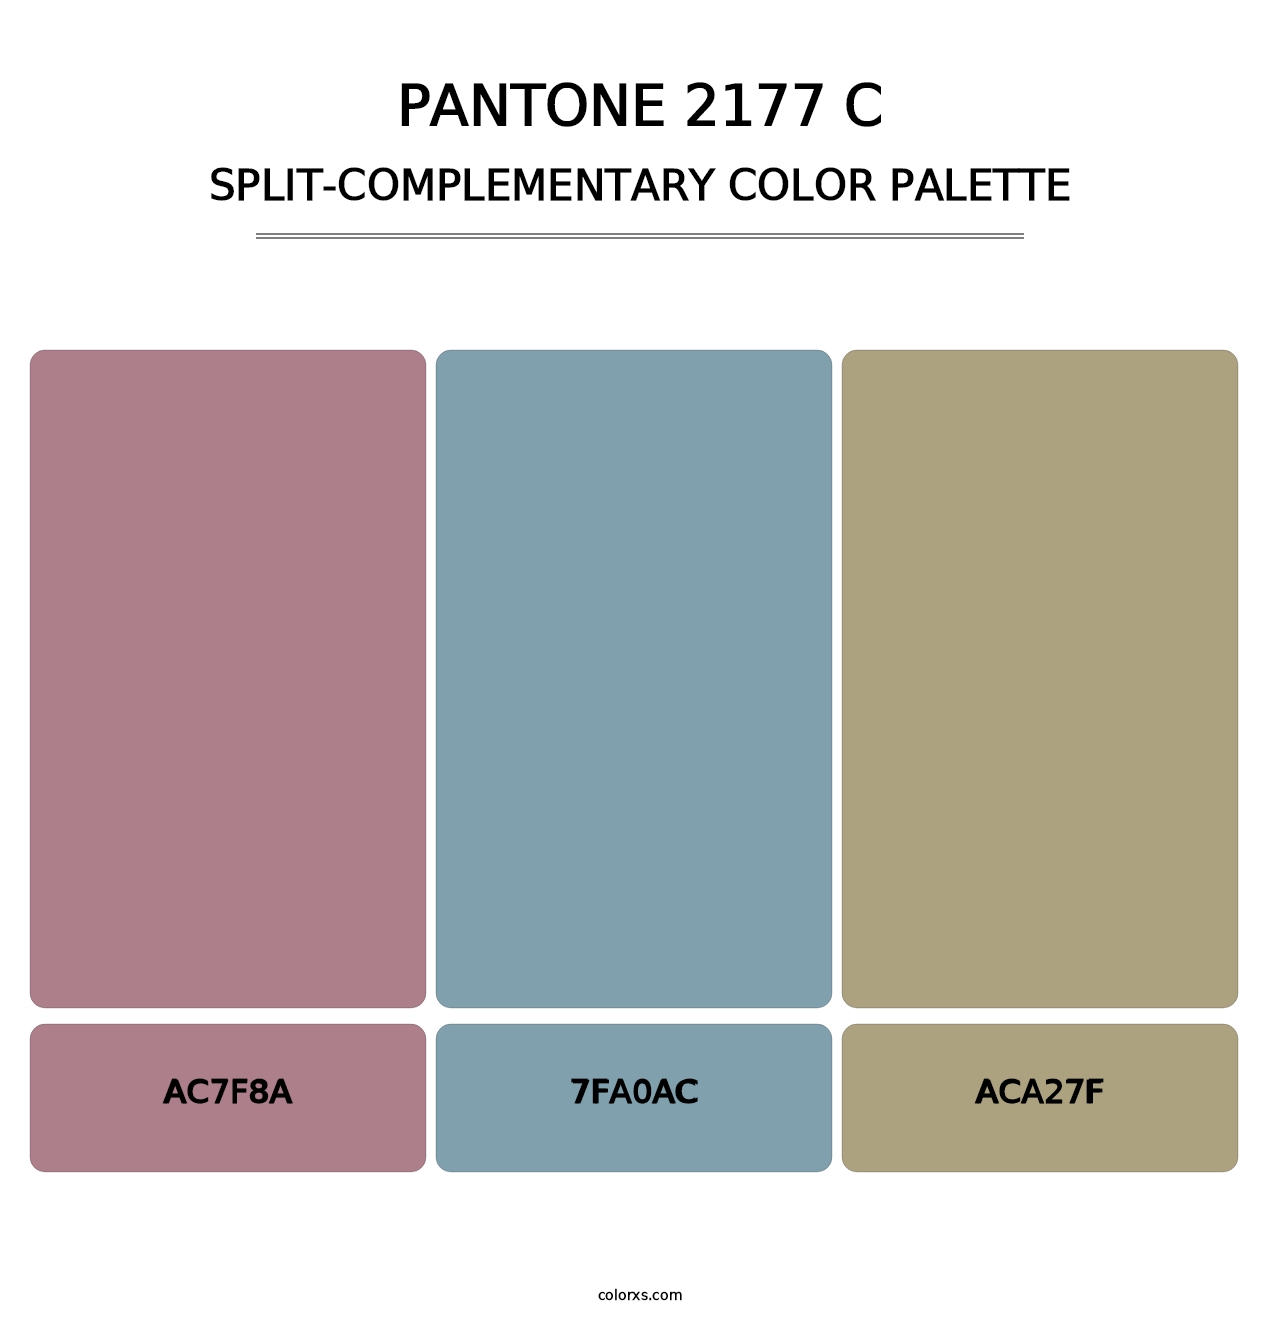 PANTONE 2177 C - Split-Complementary Color Palette